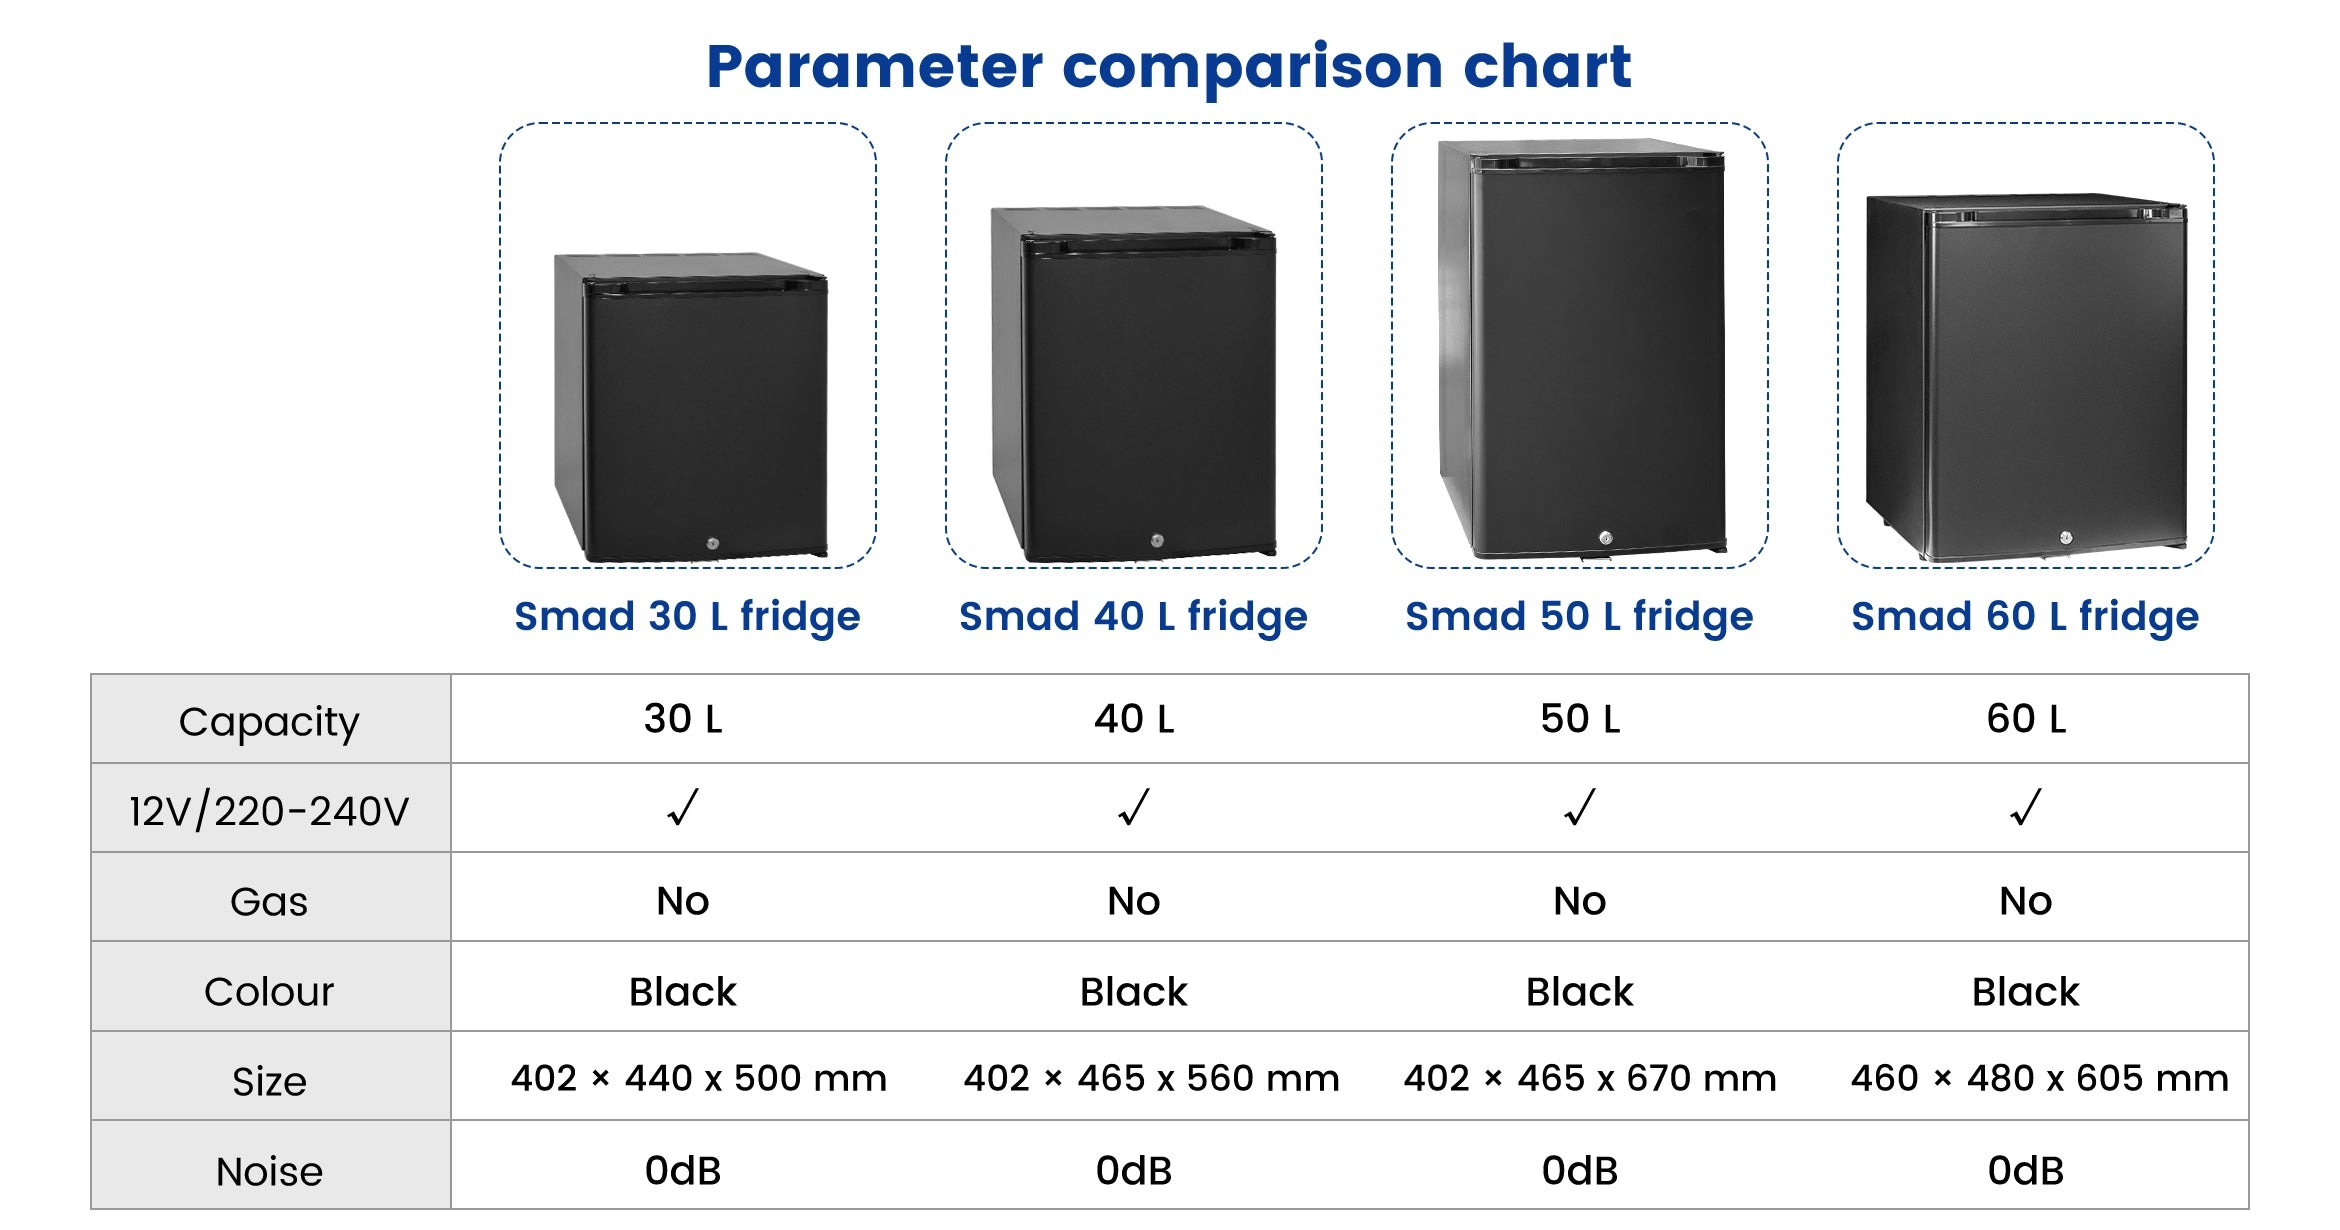 DSX-40L Parameter comparison chart